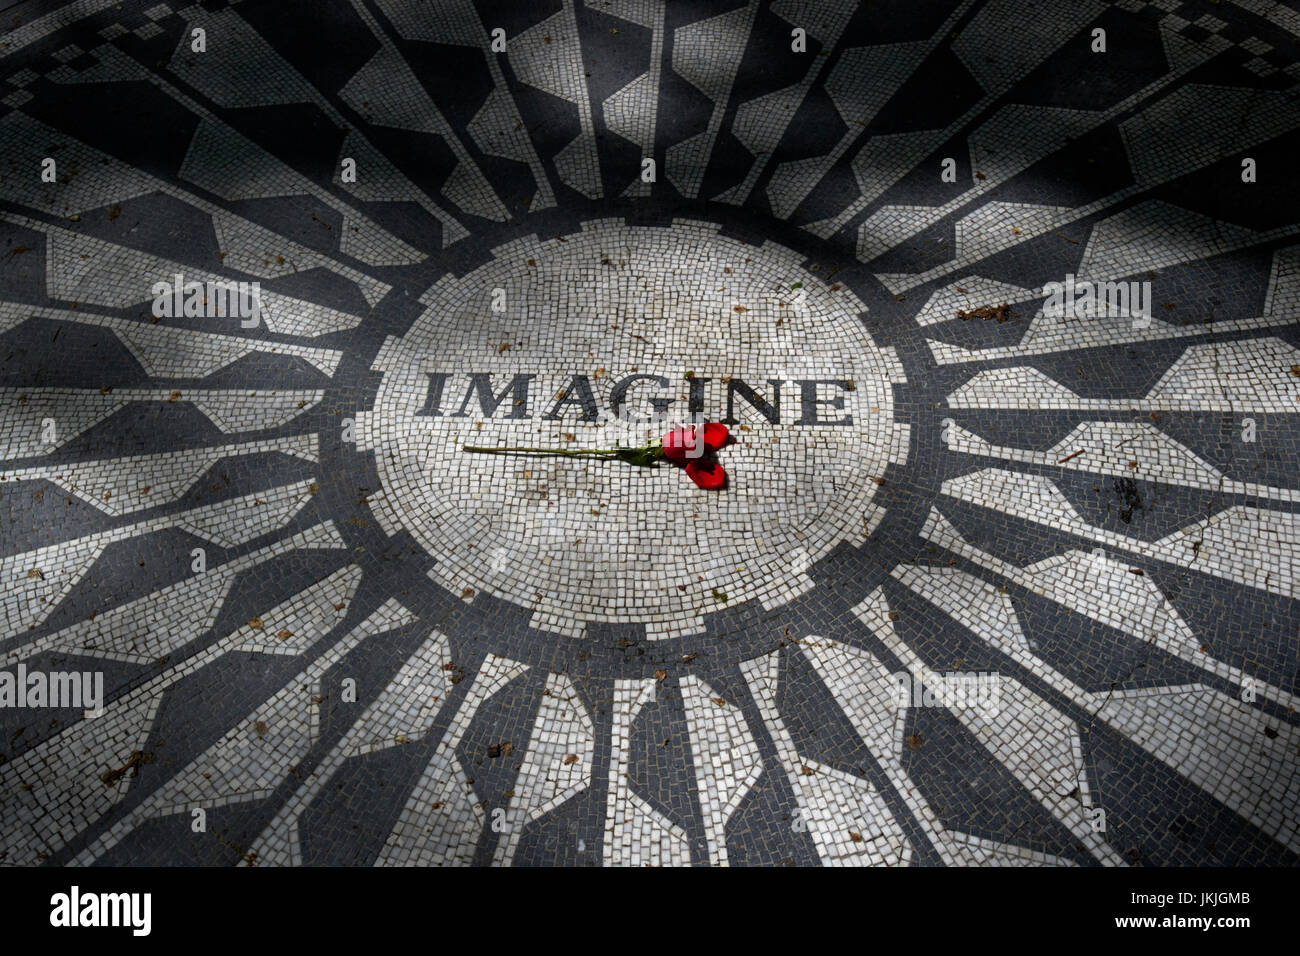 Single red rose sul immaginare mosaico dedicato a John Lennon in central Park di New York City STATI UNITI D'AMERICA Foto Stock